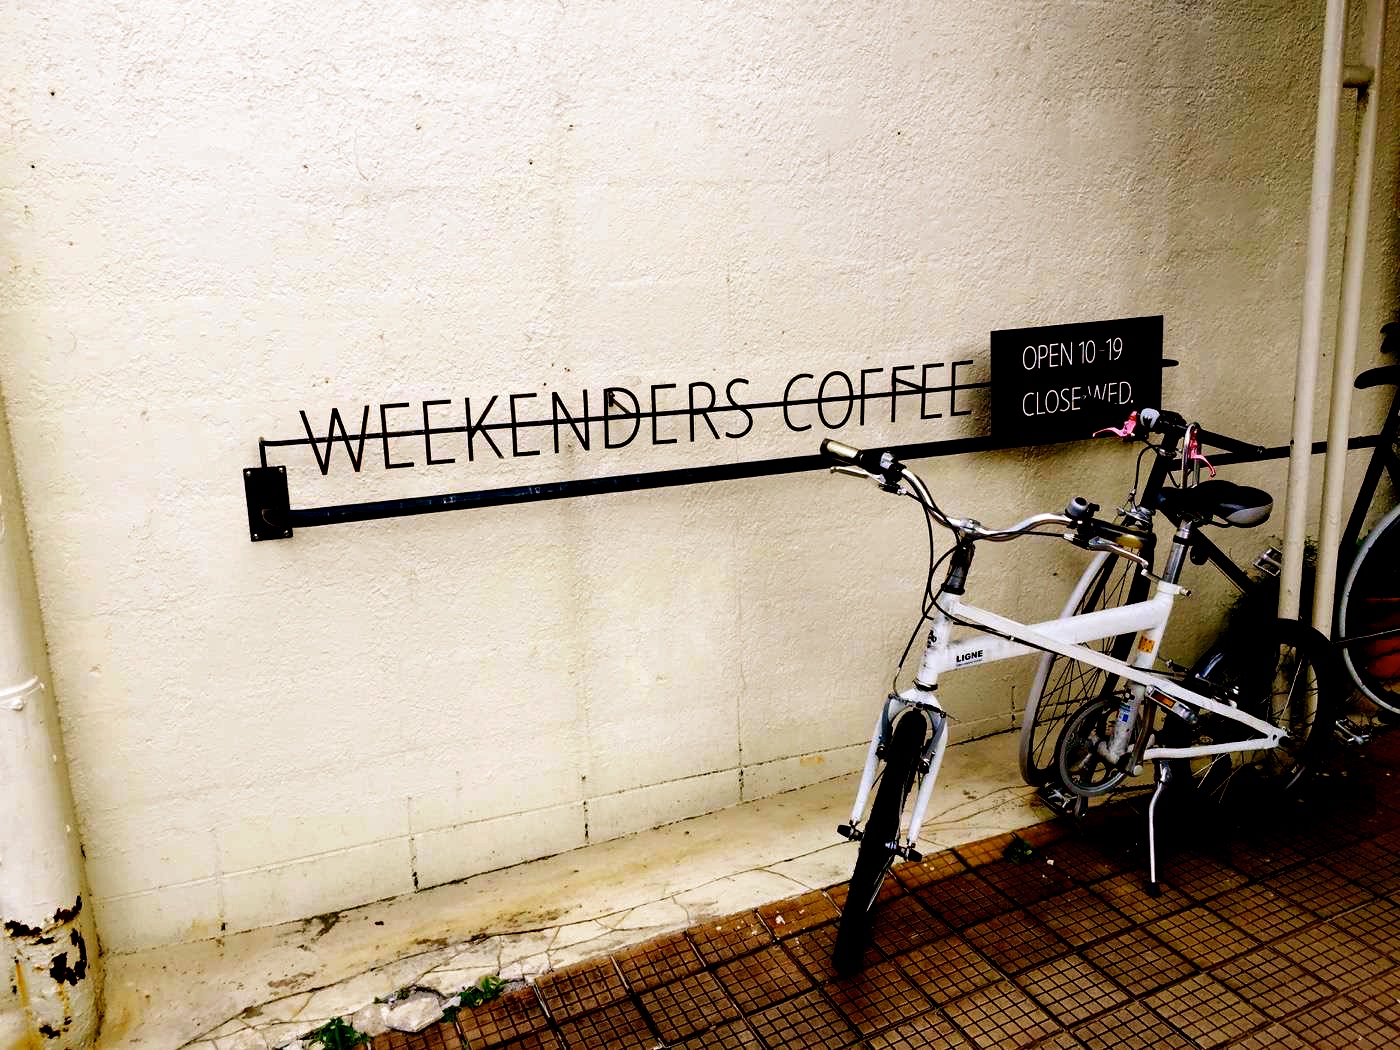 Weekenders coffee